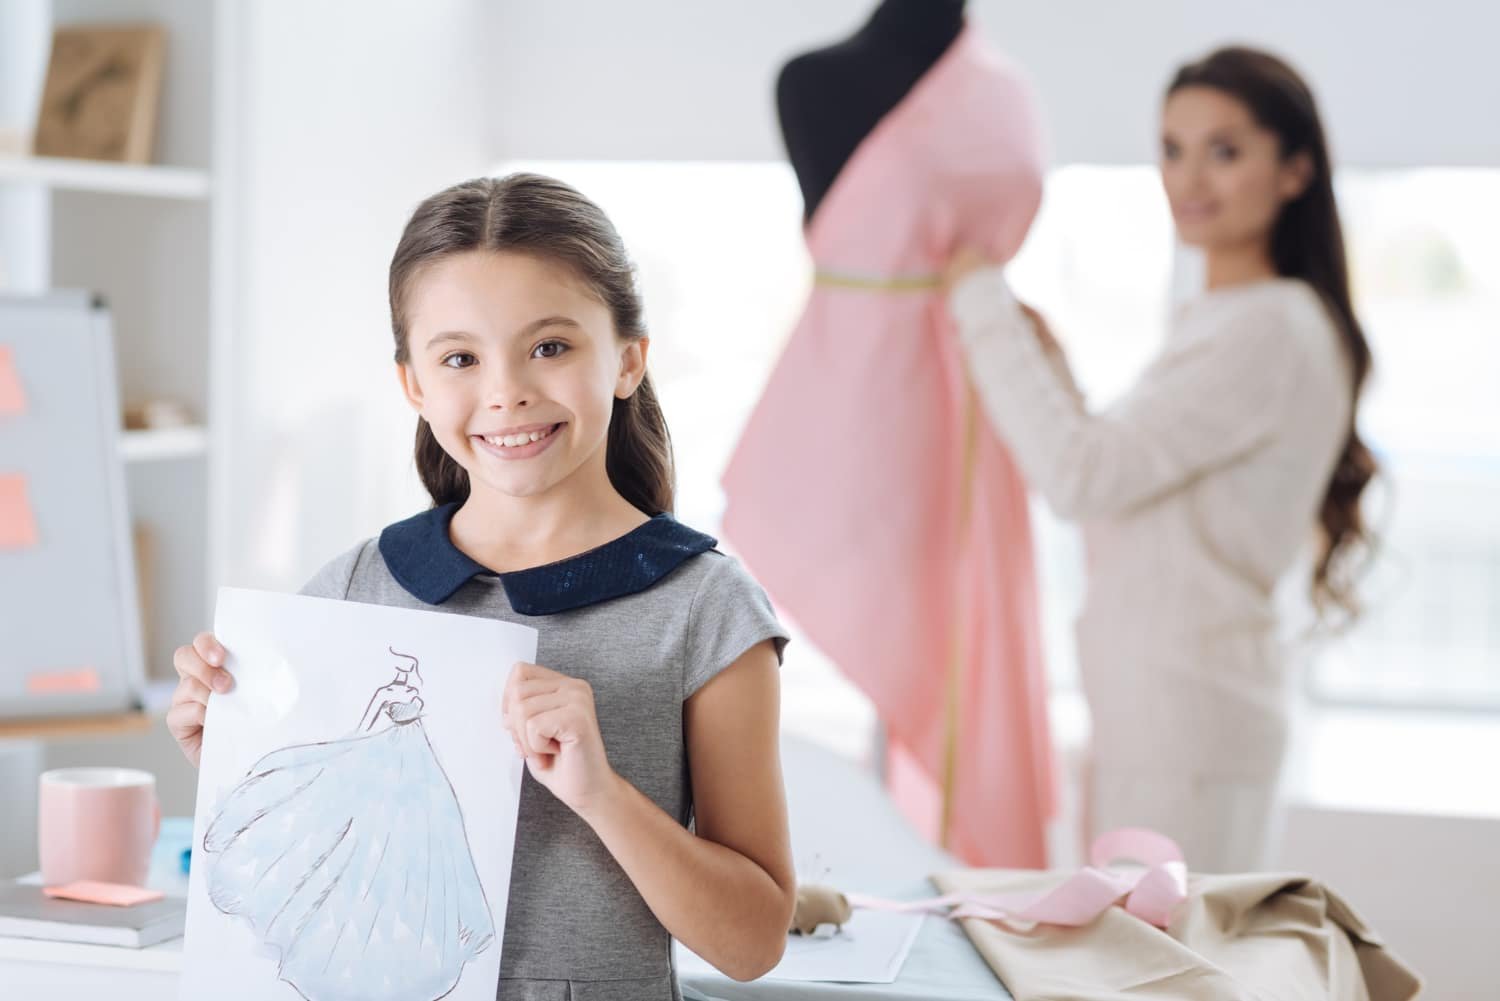 Childrensalon: Designer Fashion for Children from Newborn to Teens